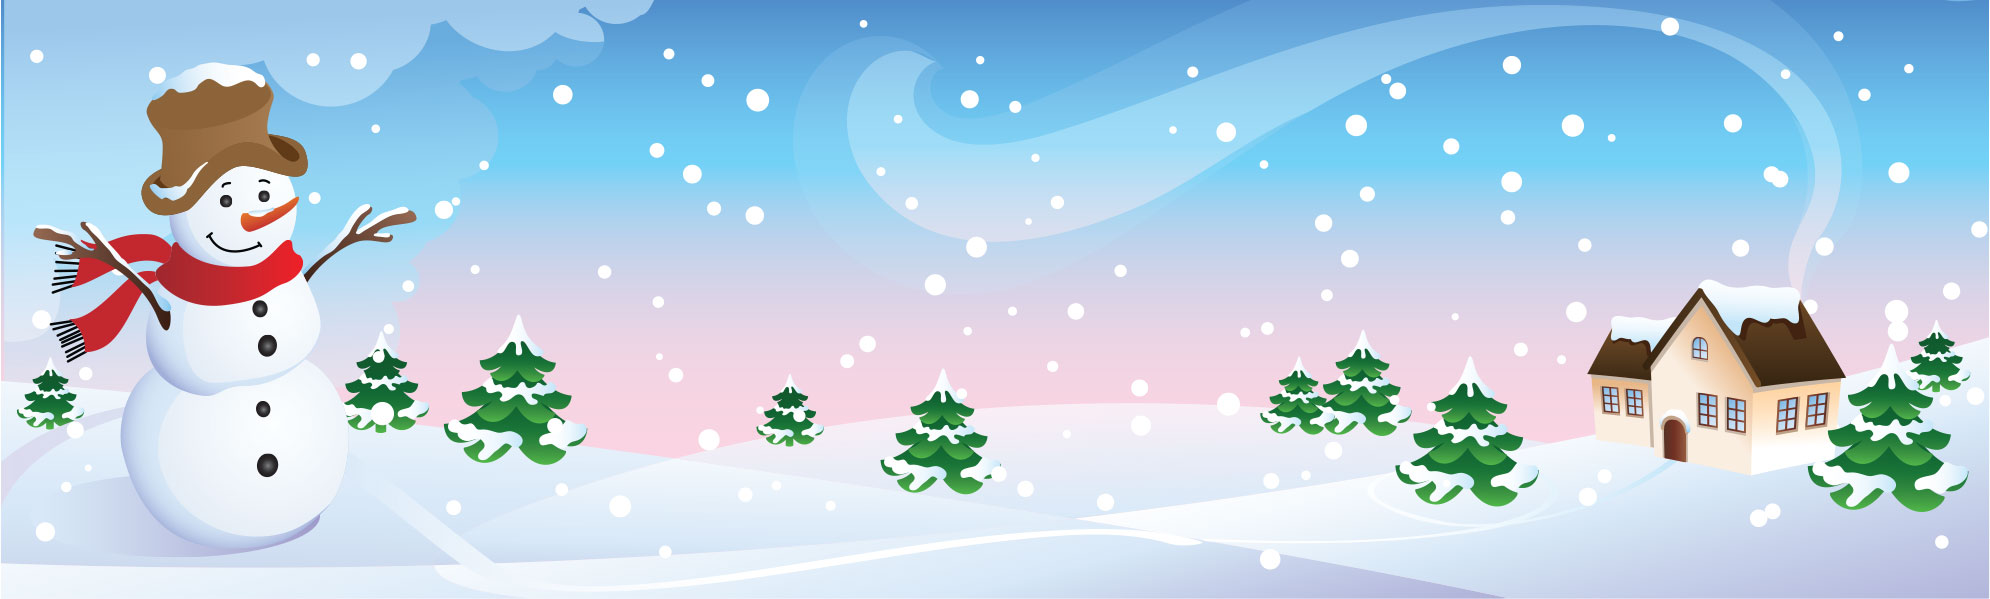 冬の画像サンプル-雪だるま-バナー